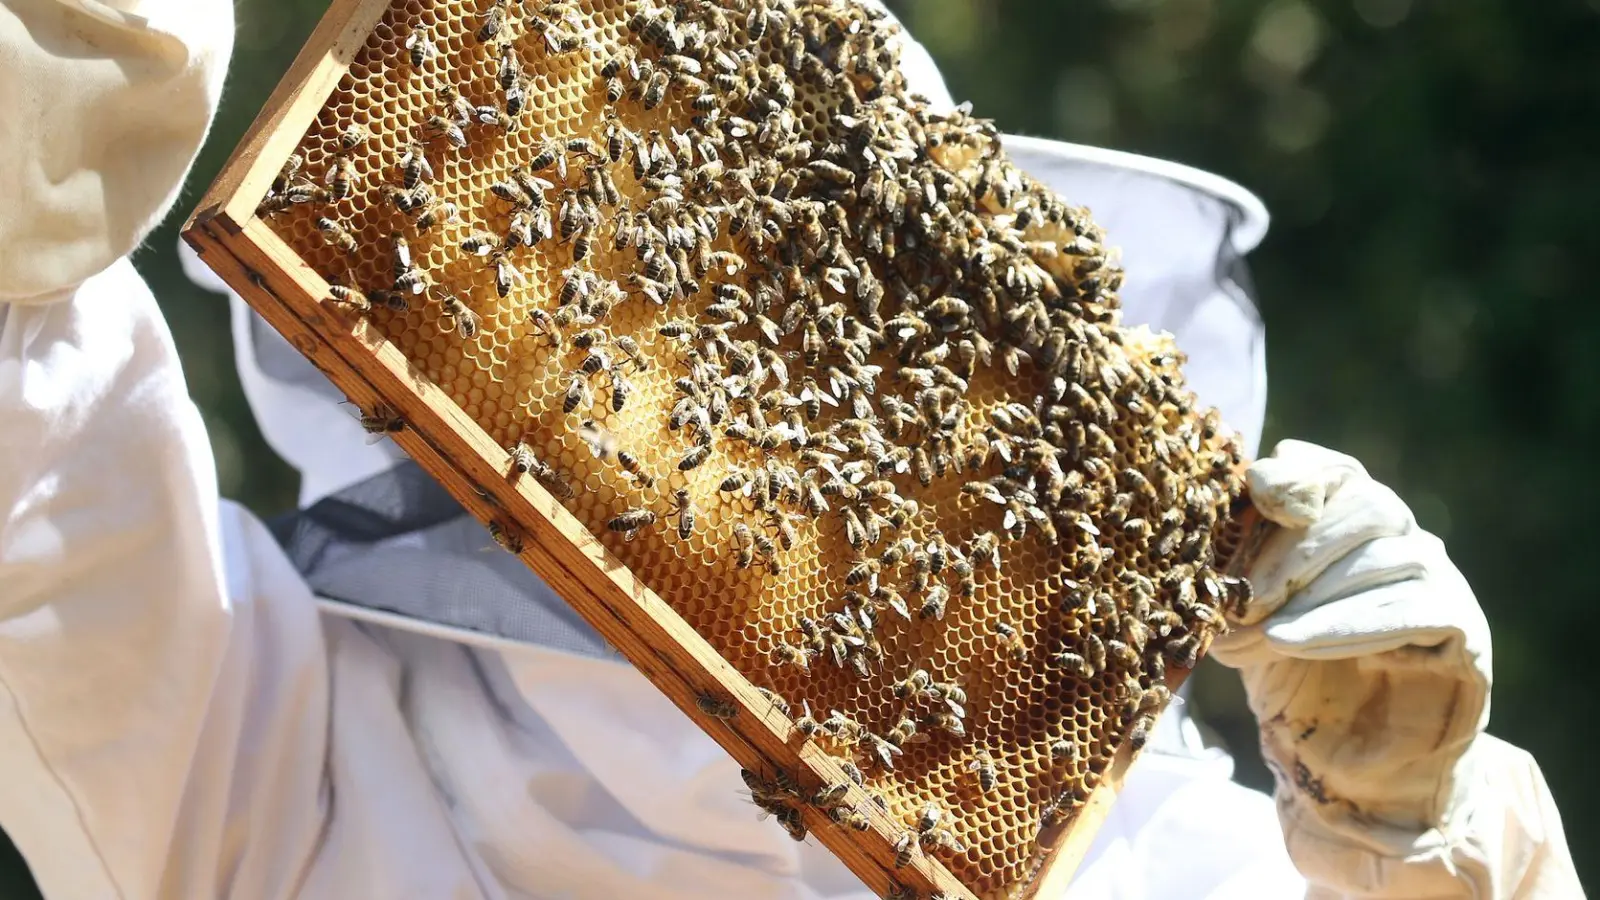 Sobald die Bienen im Frühjahr ausschwärmen, müssen die Imker ihre Völker durchsehen, ob sie den Winter überstanden haben und Brut in den Waben vorhanden ist. (Foto: Wolfgang Kumm/dpa/dpa-tmn)